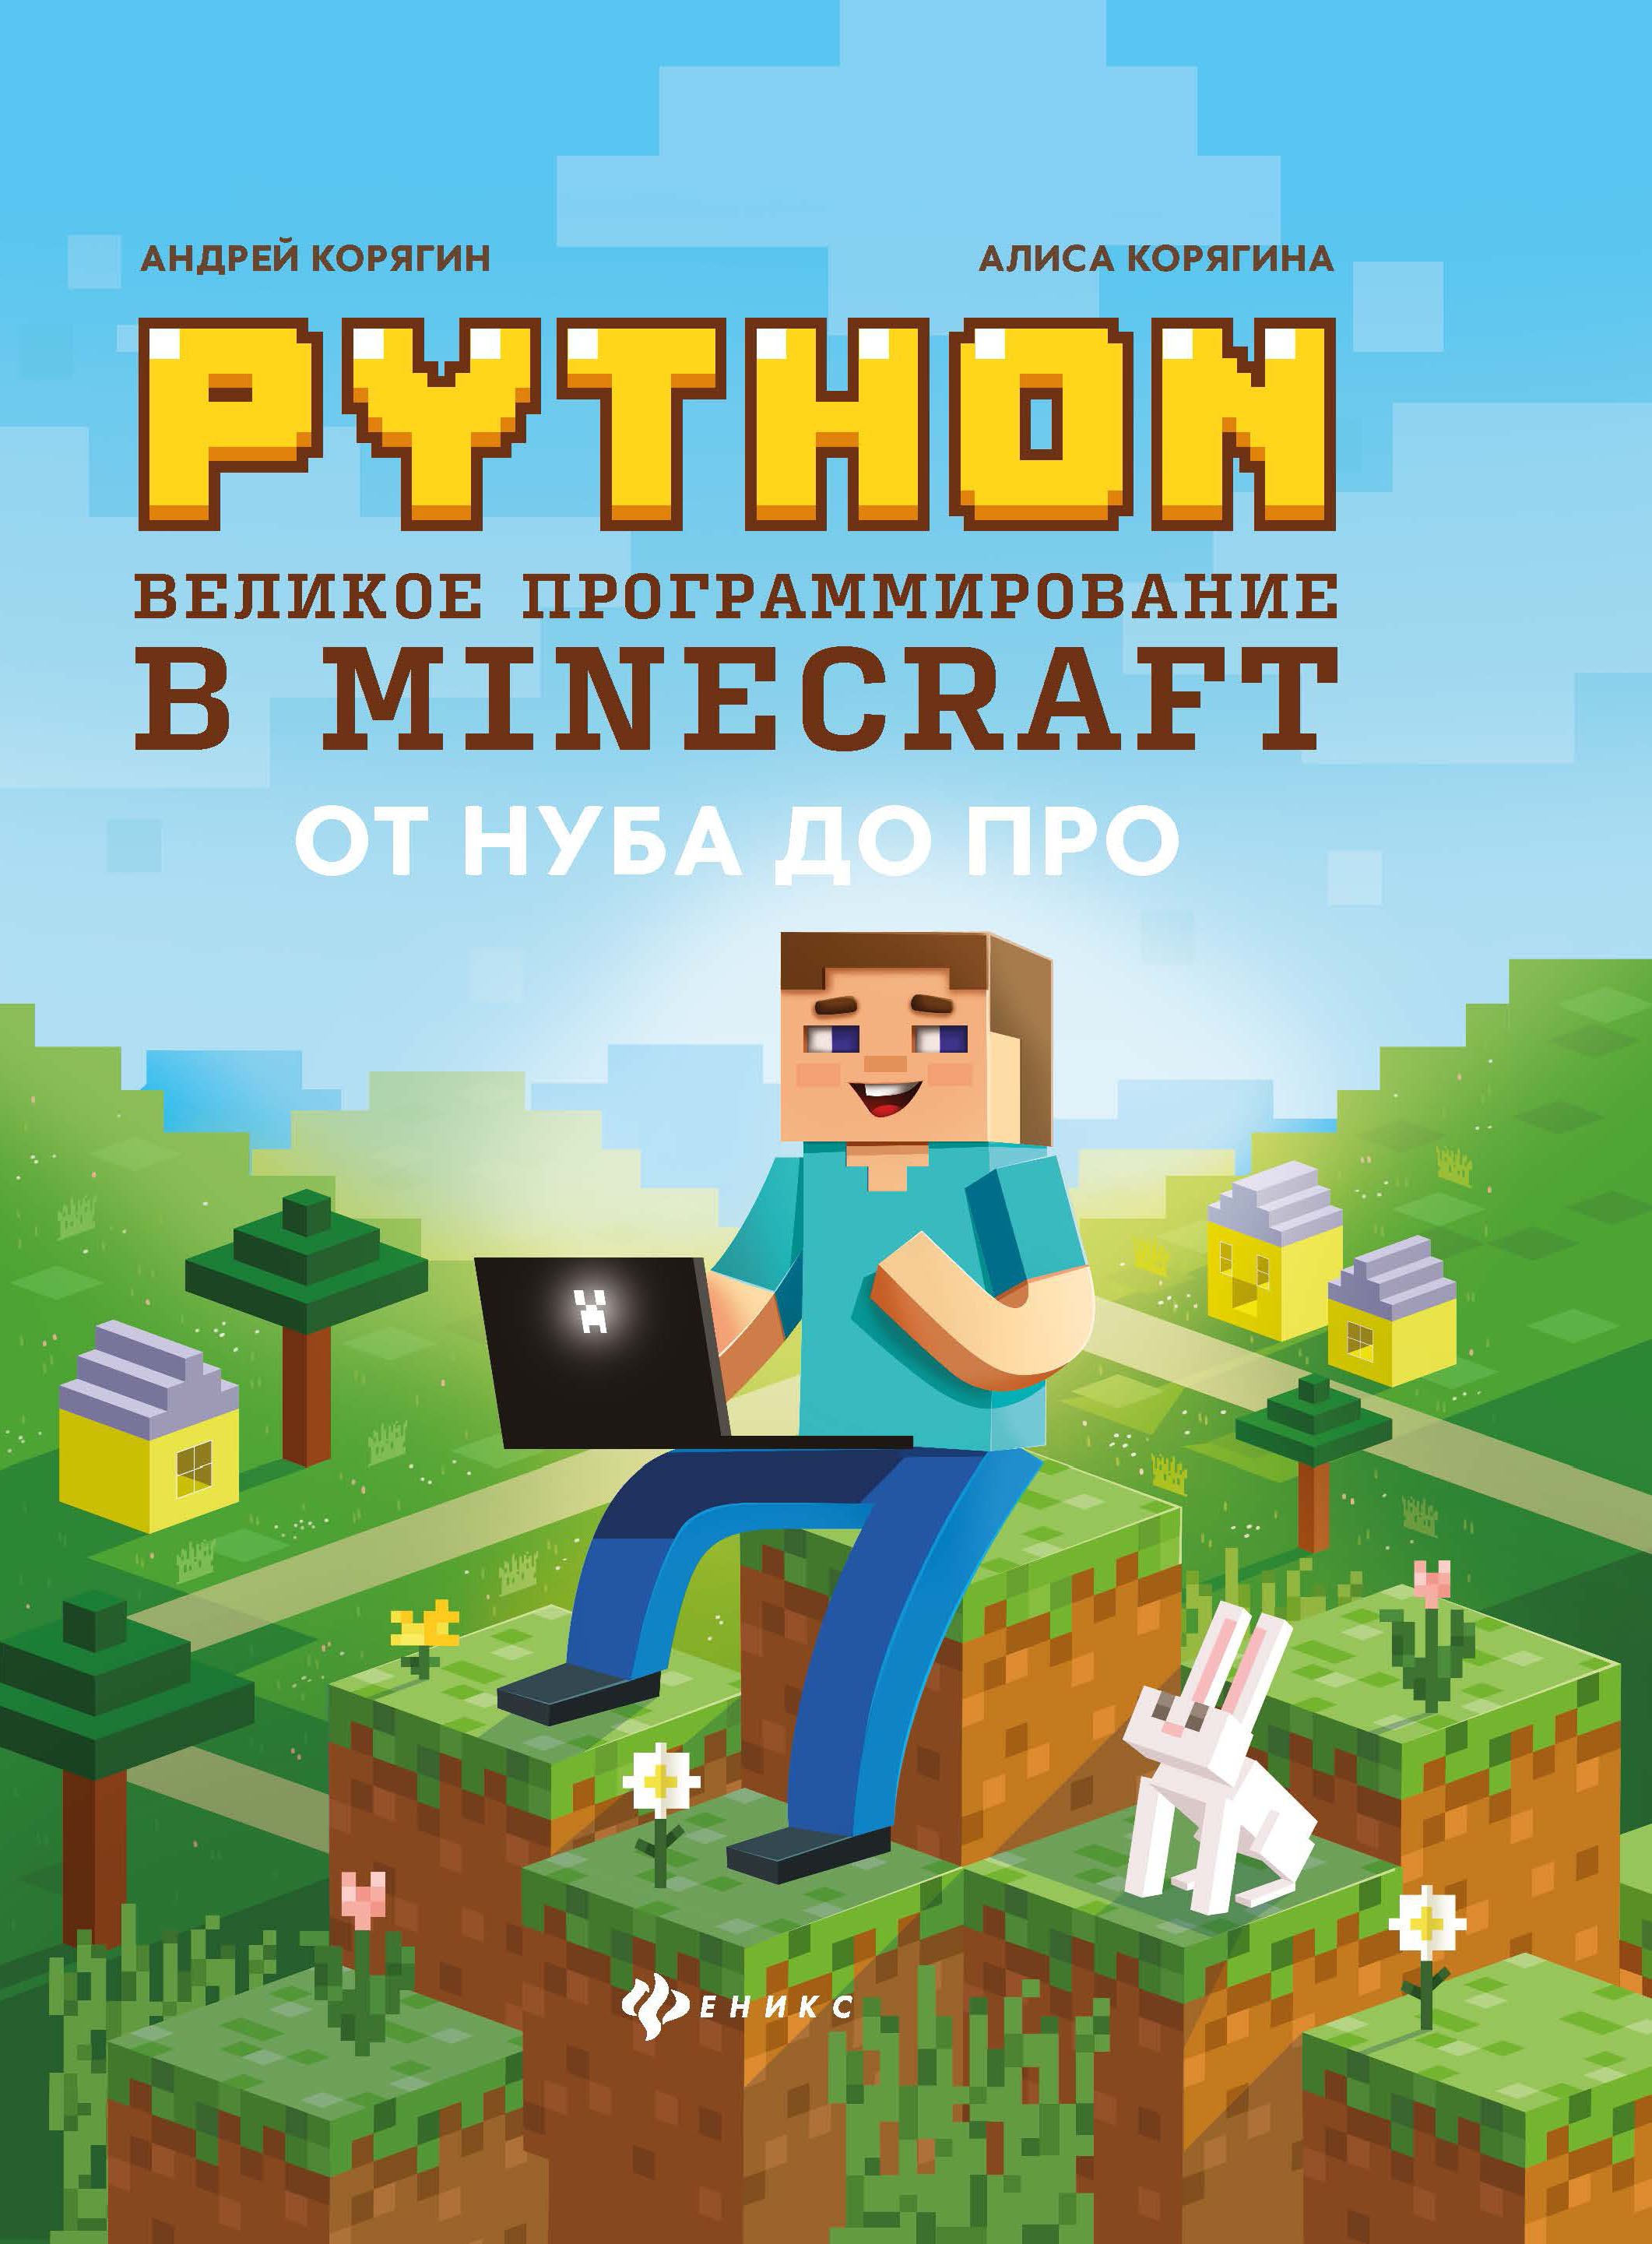 златопольский д основы программирования на языке python Корягин Андрей Владимирович Python. Великое программирование в Minecraft